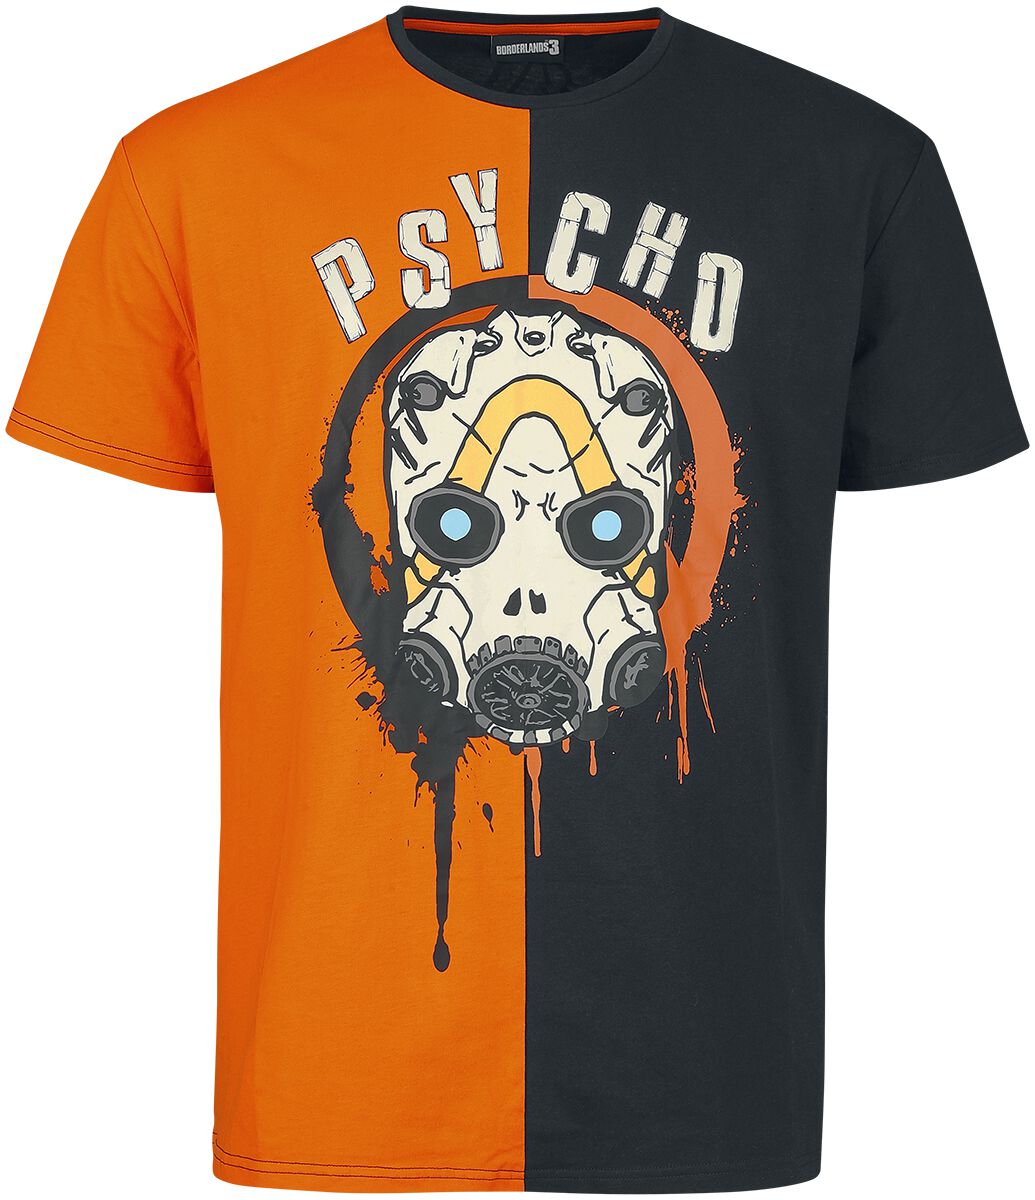 Borderlands - Gaming T-Shirt - Psycho - S bis M - für Männer - Größe S - schwarz/orange  - EMP exklusives Merchandise!